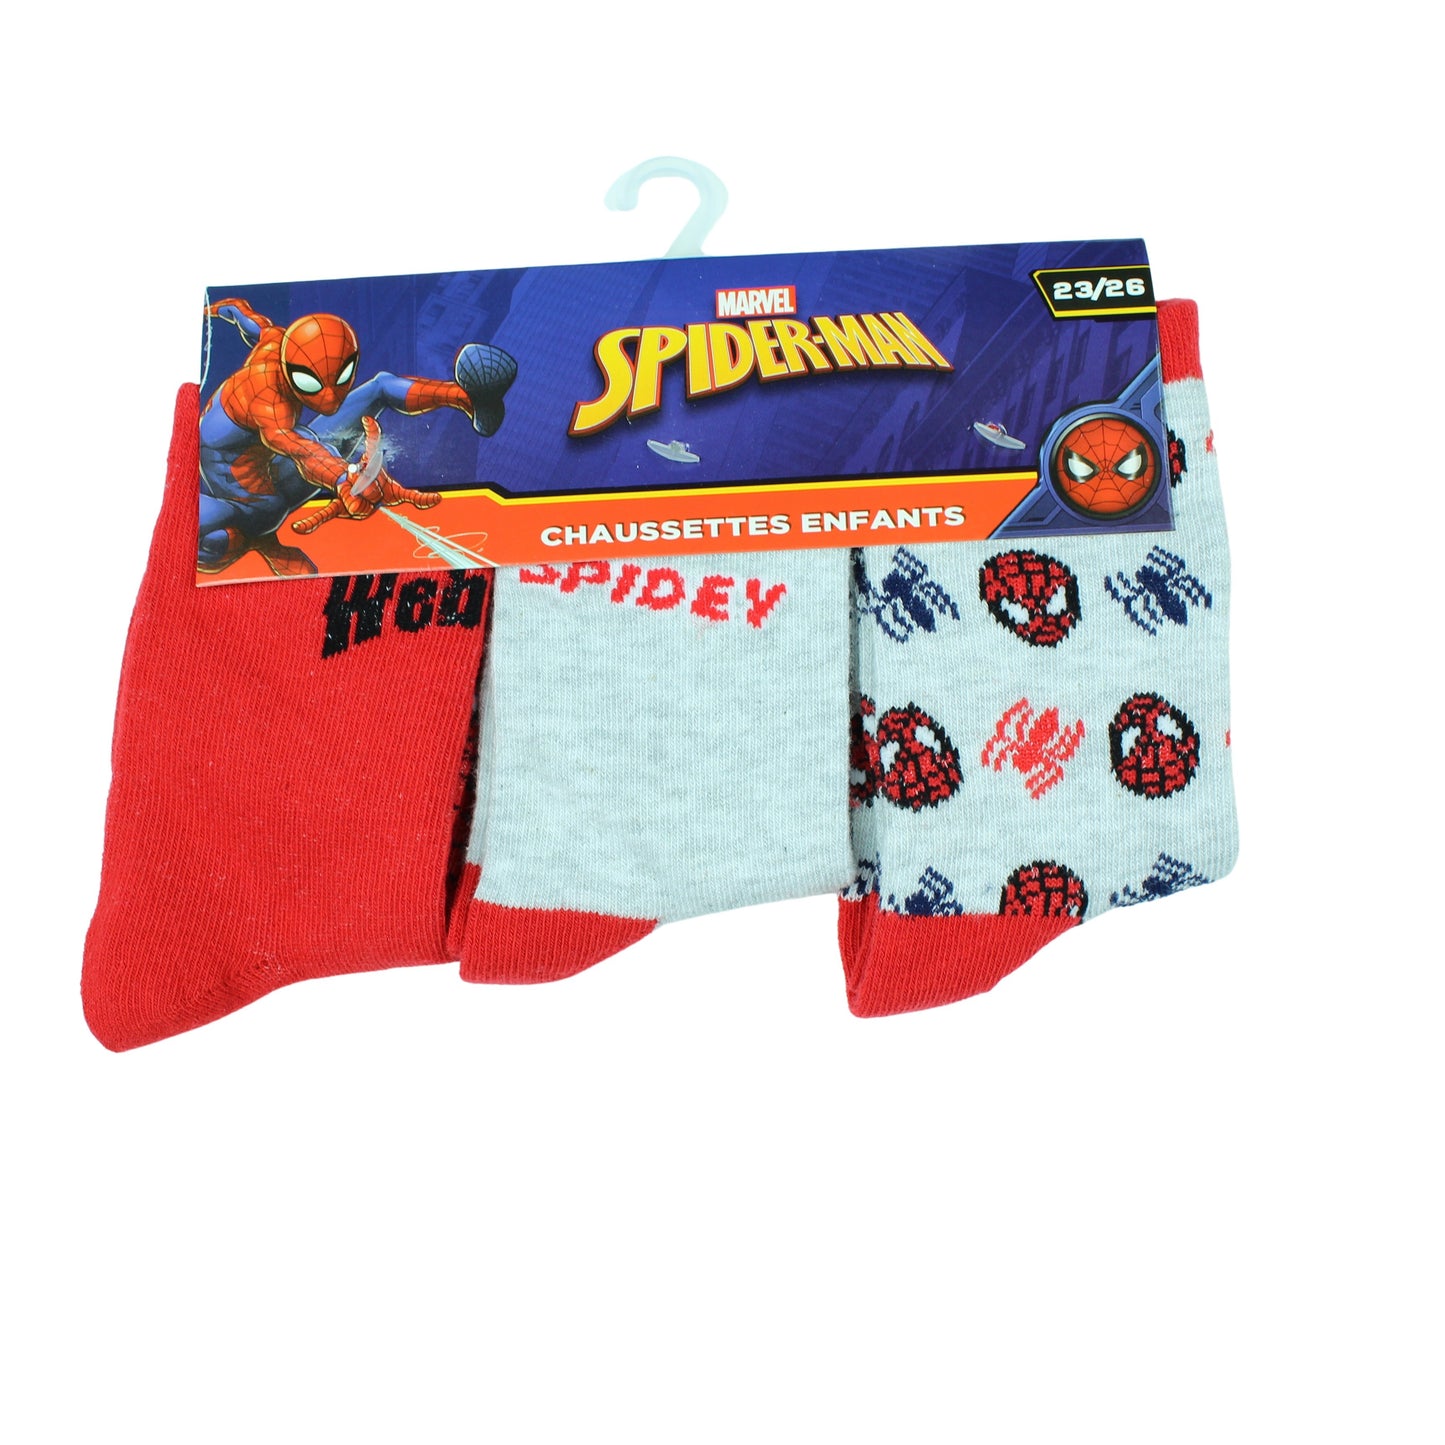 Spiderman set of 3 socks